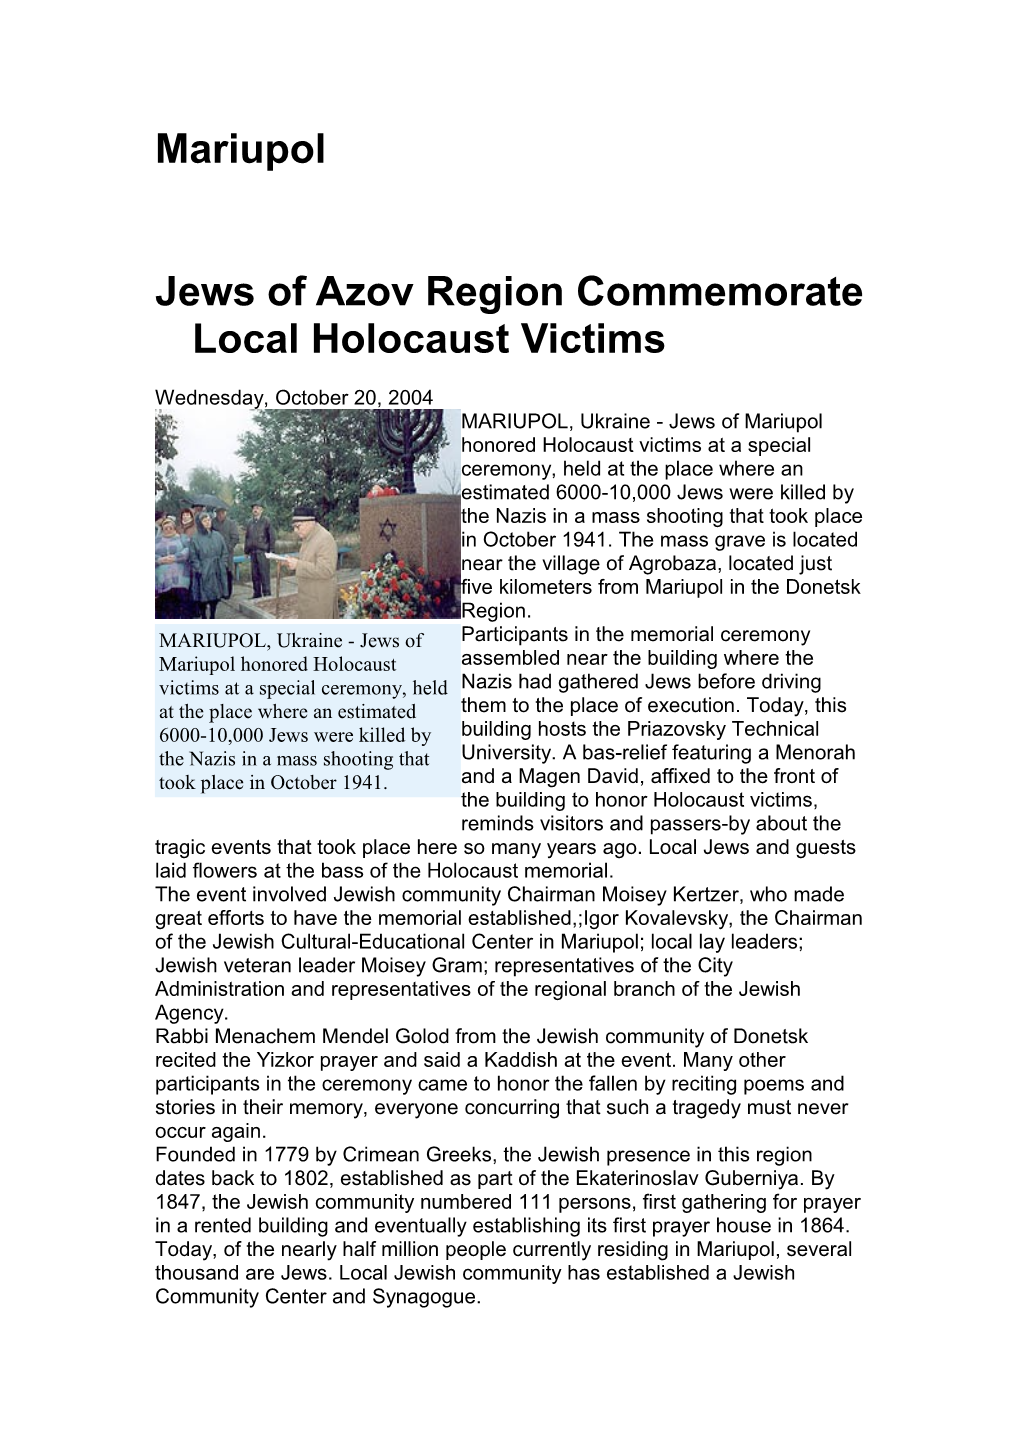 Jews of Azov Region Commemorate Local Holocaust Victims